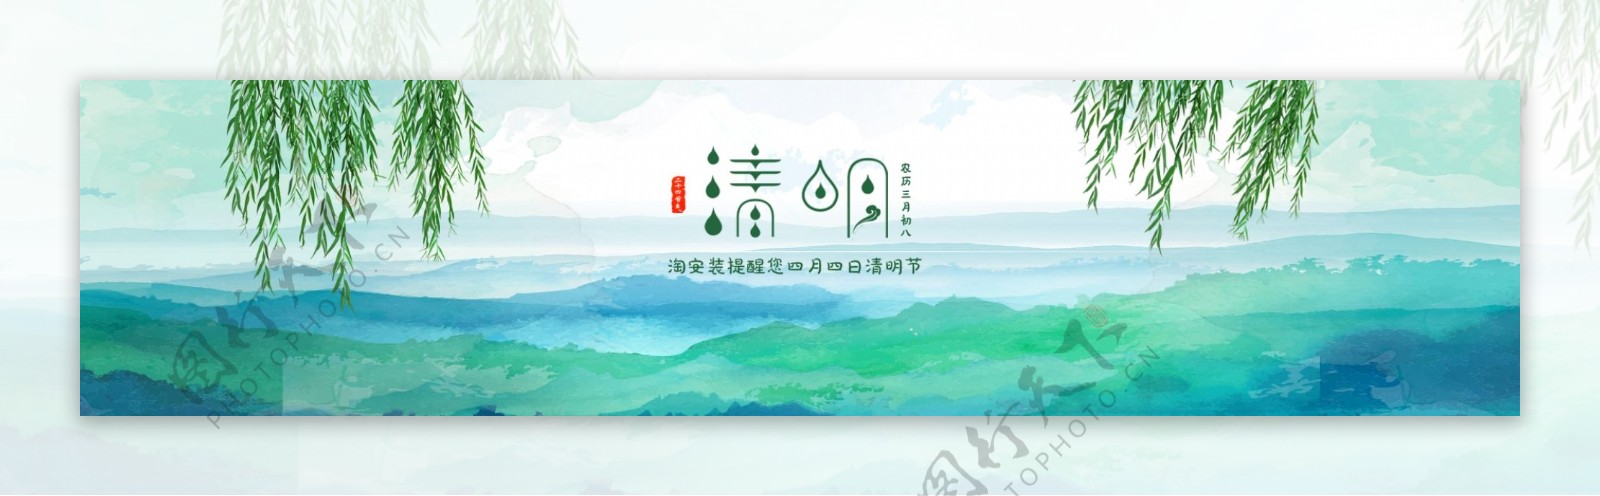 清明节电商淘宝海报banner素材背景